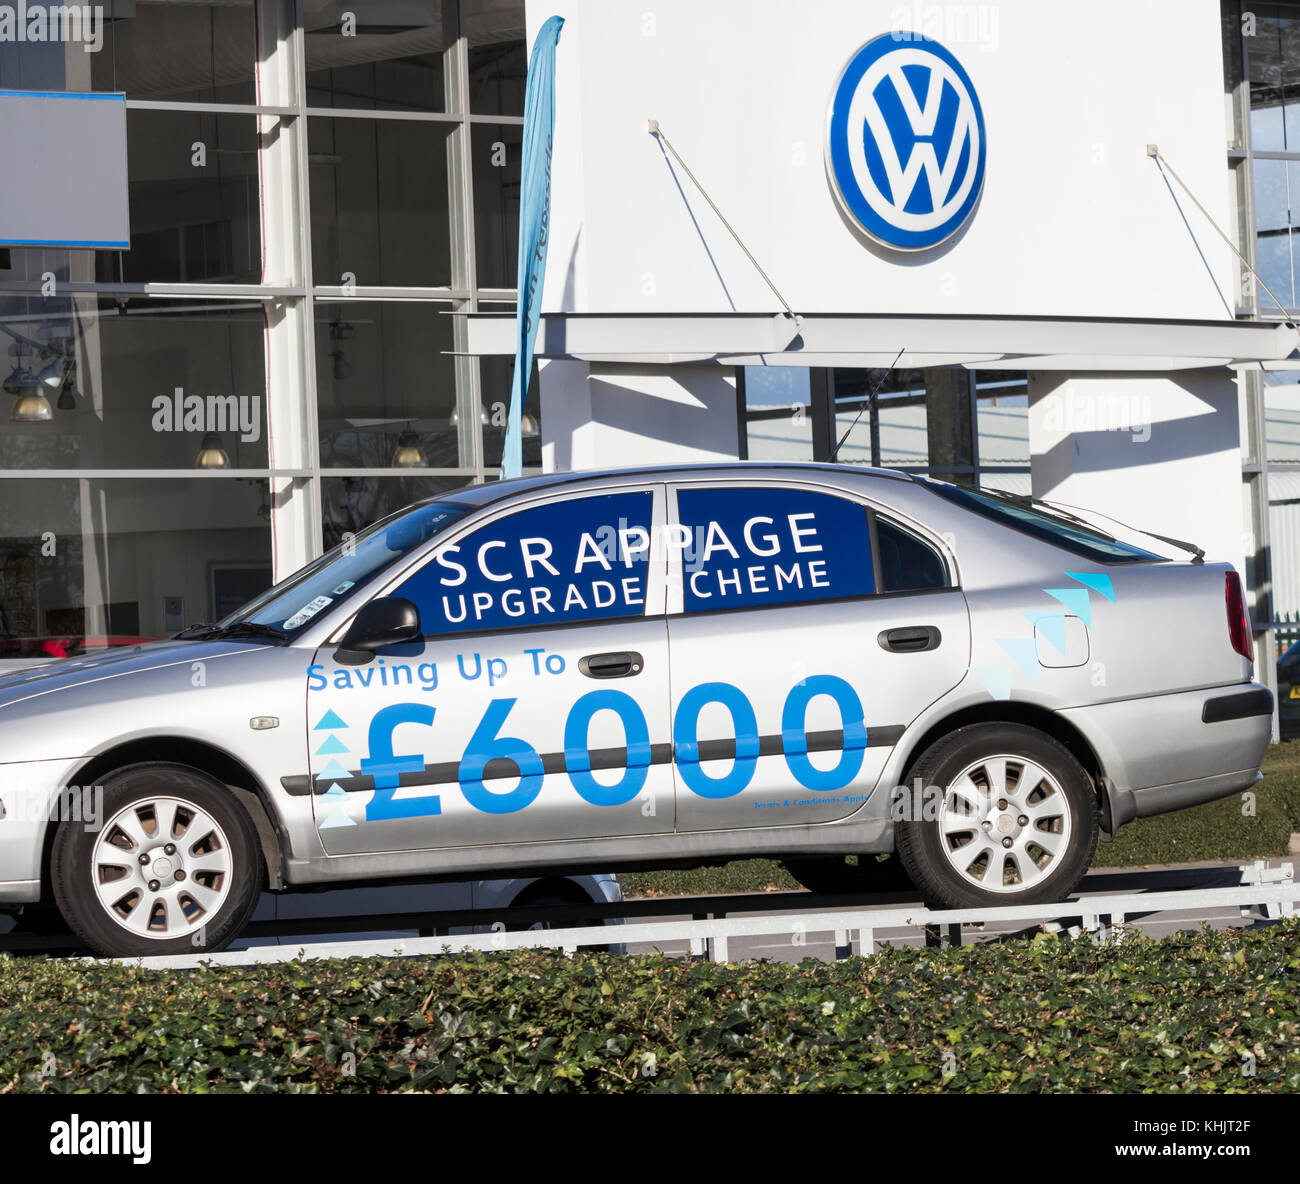 Schema di aggiornamento della scheda scrappage VW presso la concessionaria Volkswagen. REGNO UNITO Foto Stock